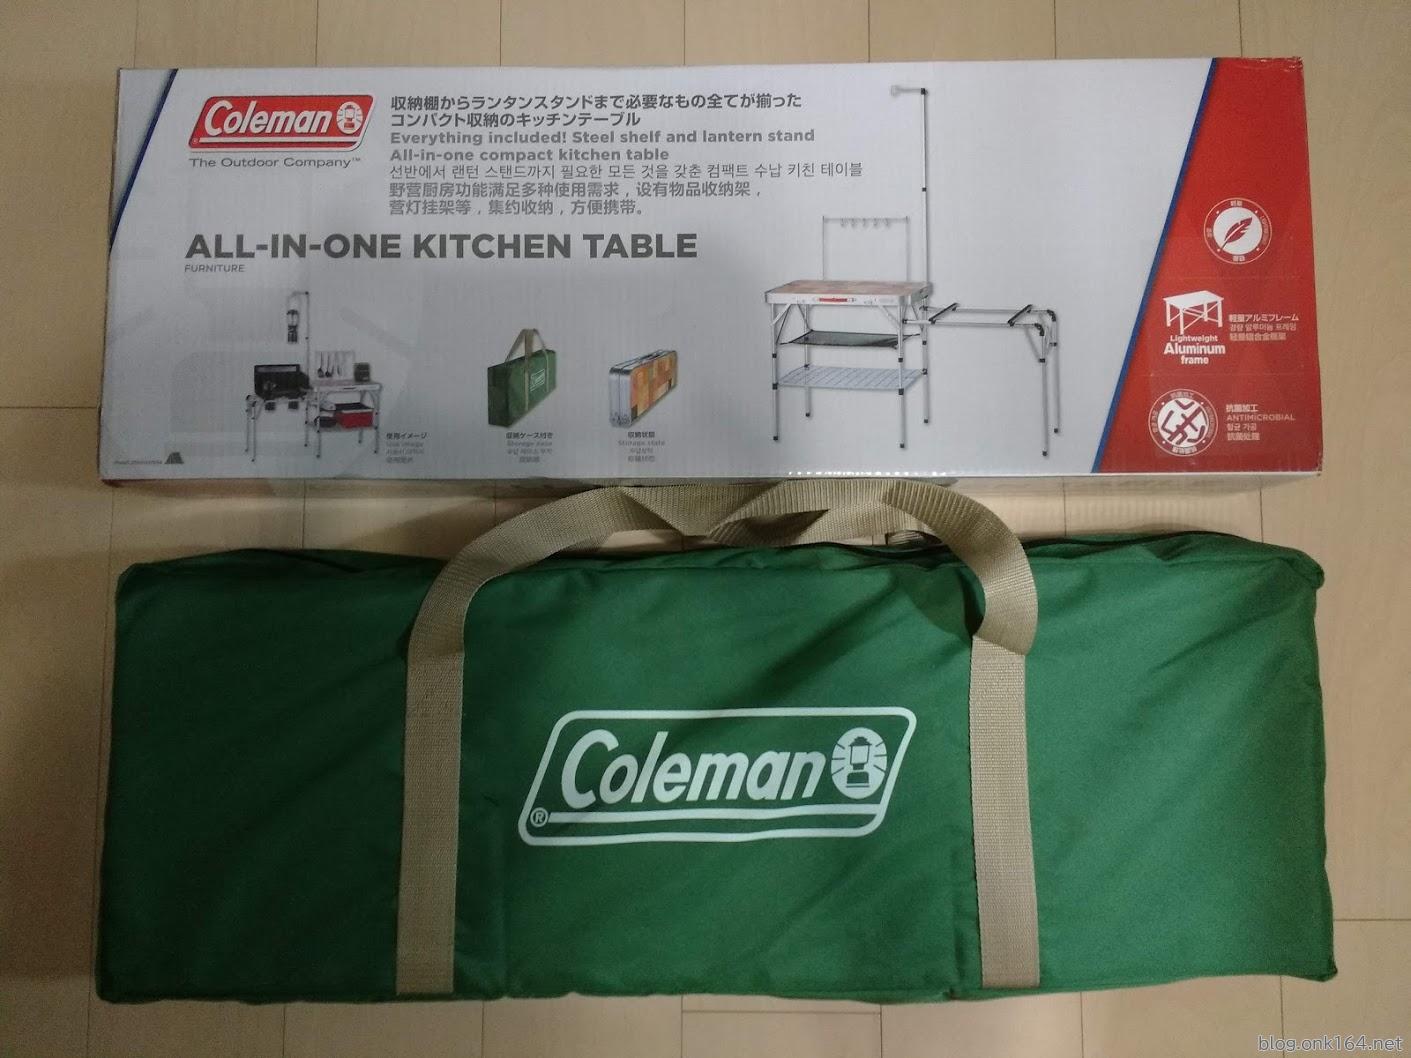 コールマン オールインワン キッチンテーブルのサイズ・重さ実測 